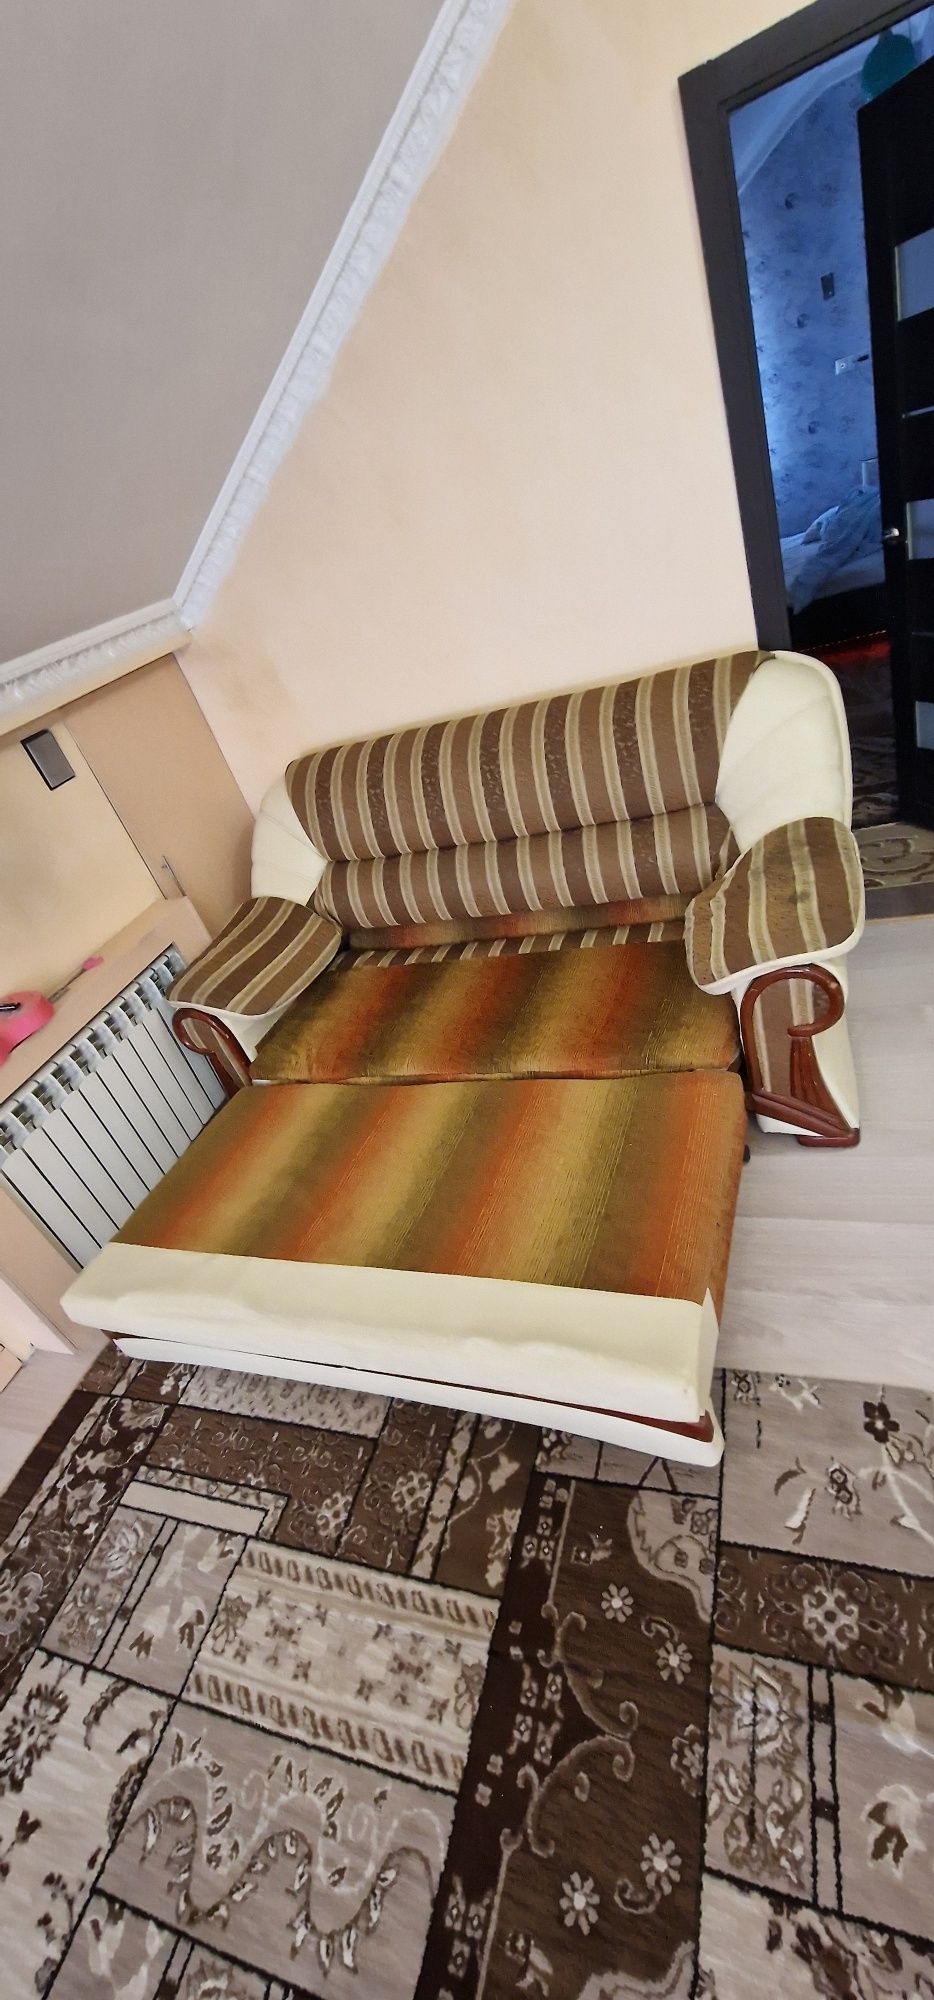 Продам диван 200×100 сложанный и  ракладывается 200 длина и ширина 150